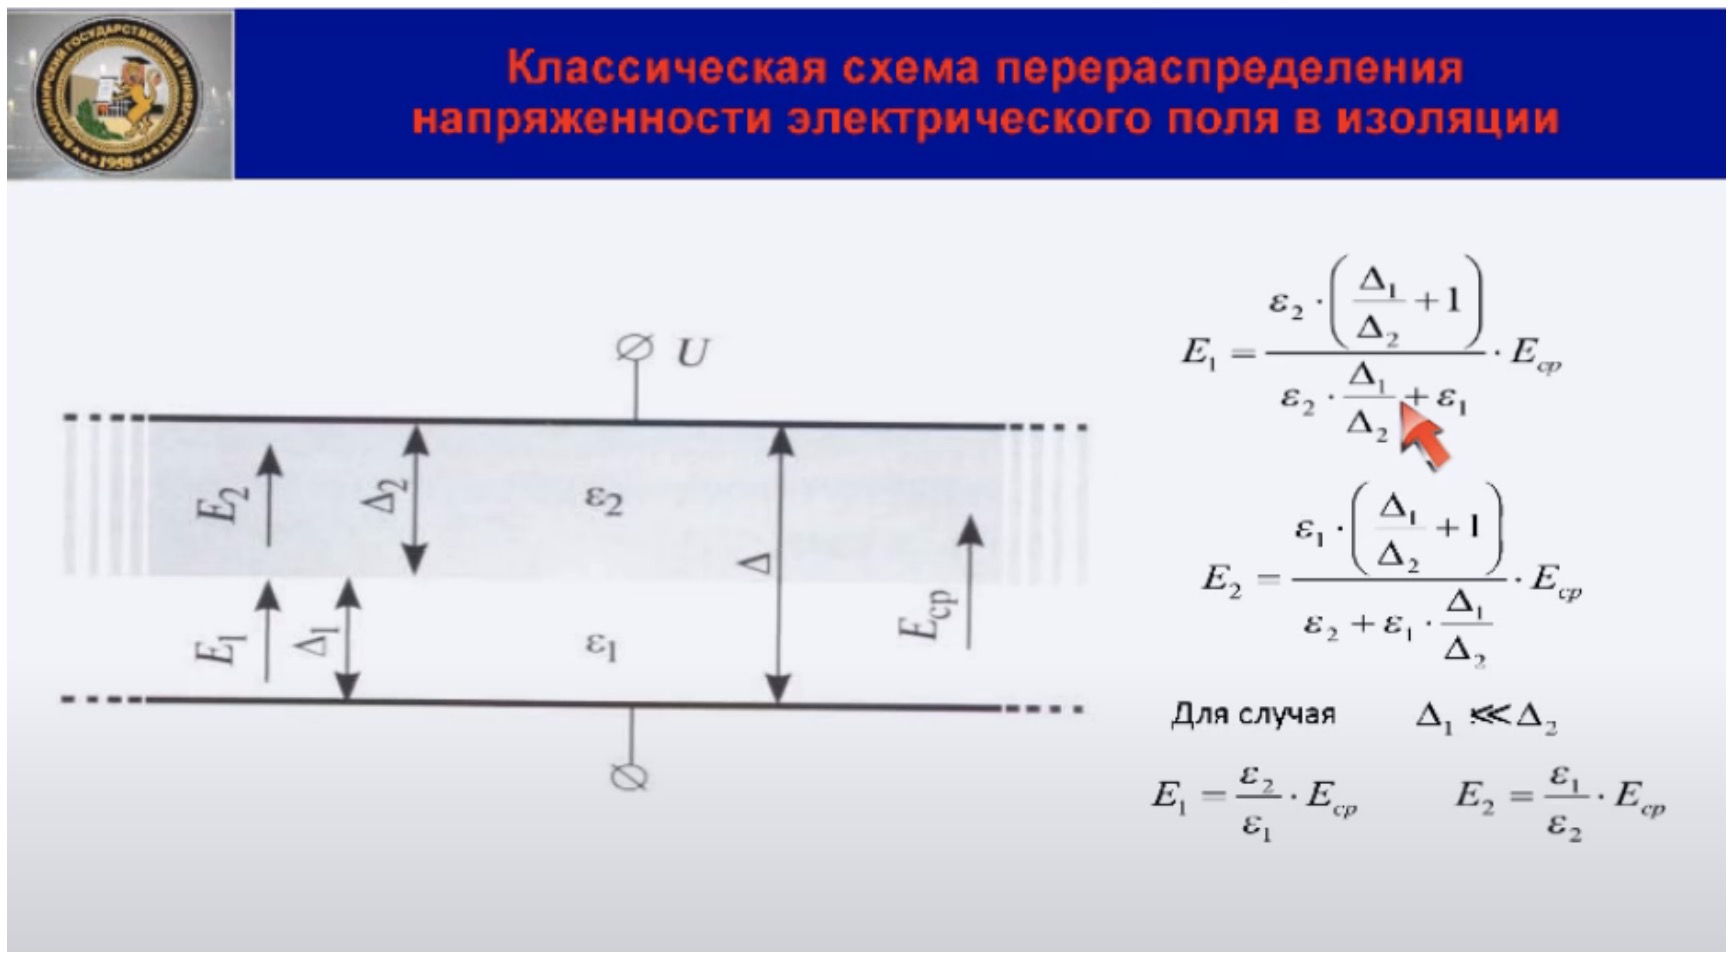 Классическая схема перераспределения напряженности электрического поля в изоляции